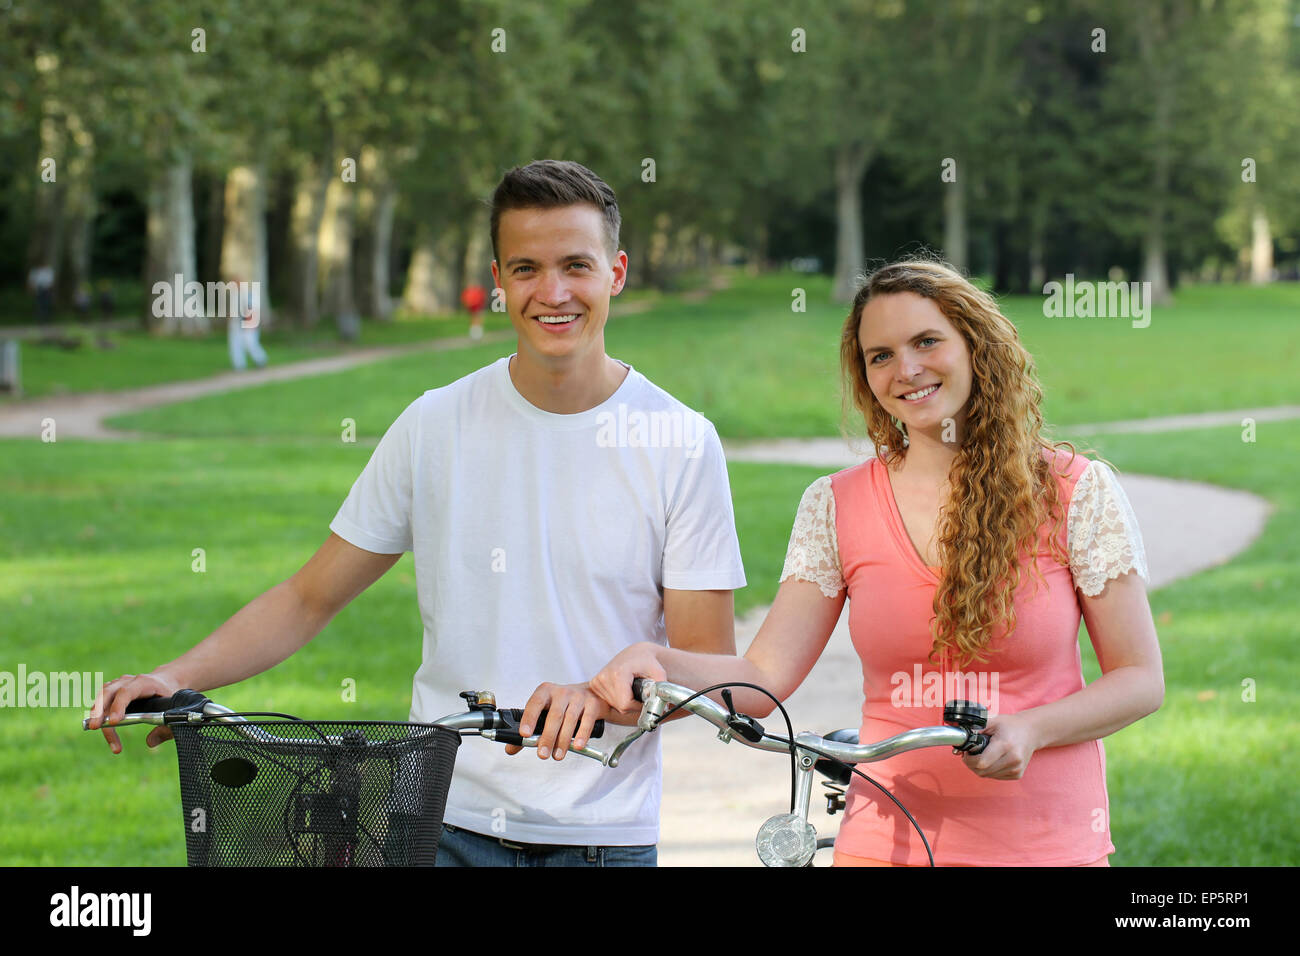 Junge Leute mit Fahrrädern Stock Photo